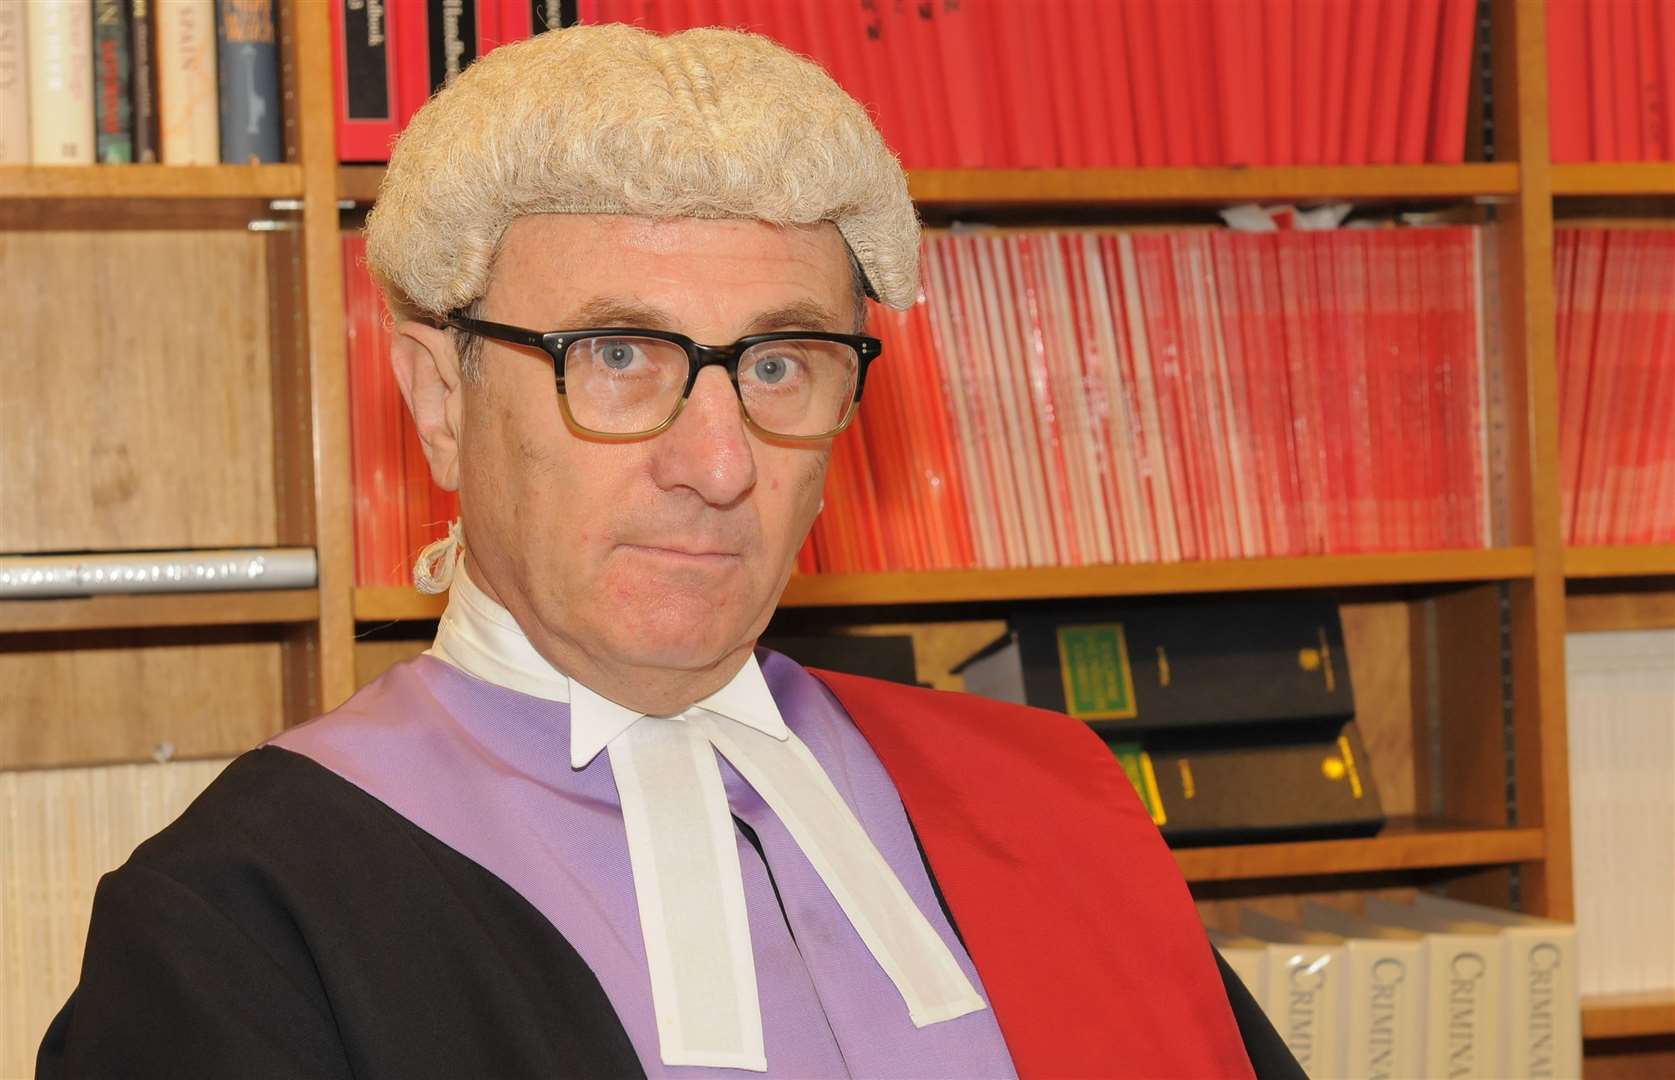 His Honour Judge David Griffith-Jones QC. Picture: Steve Crispe